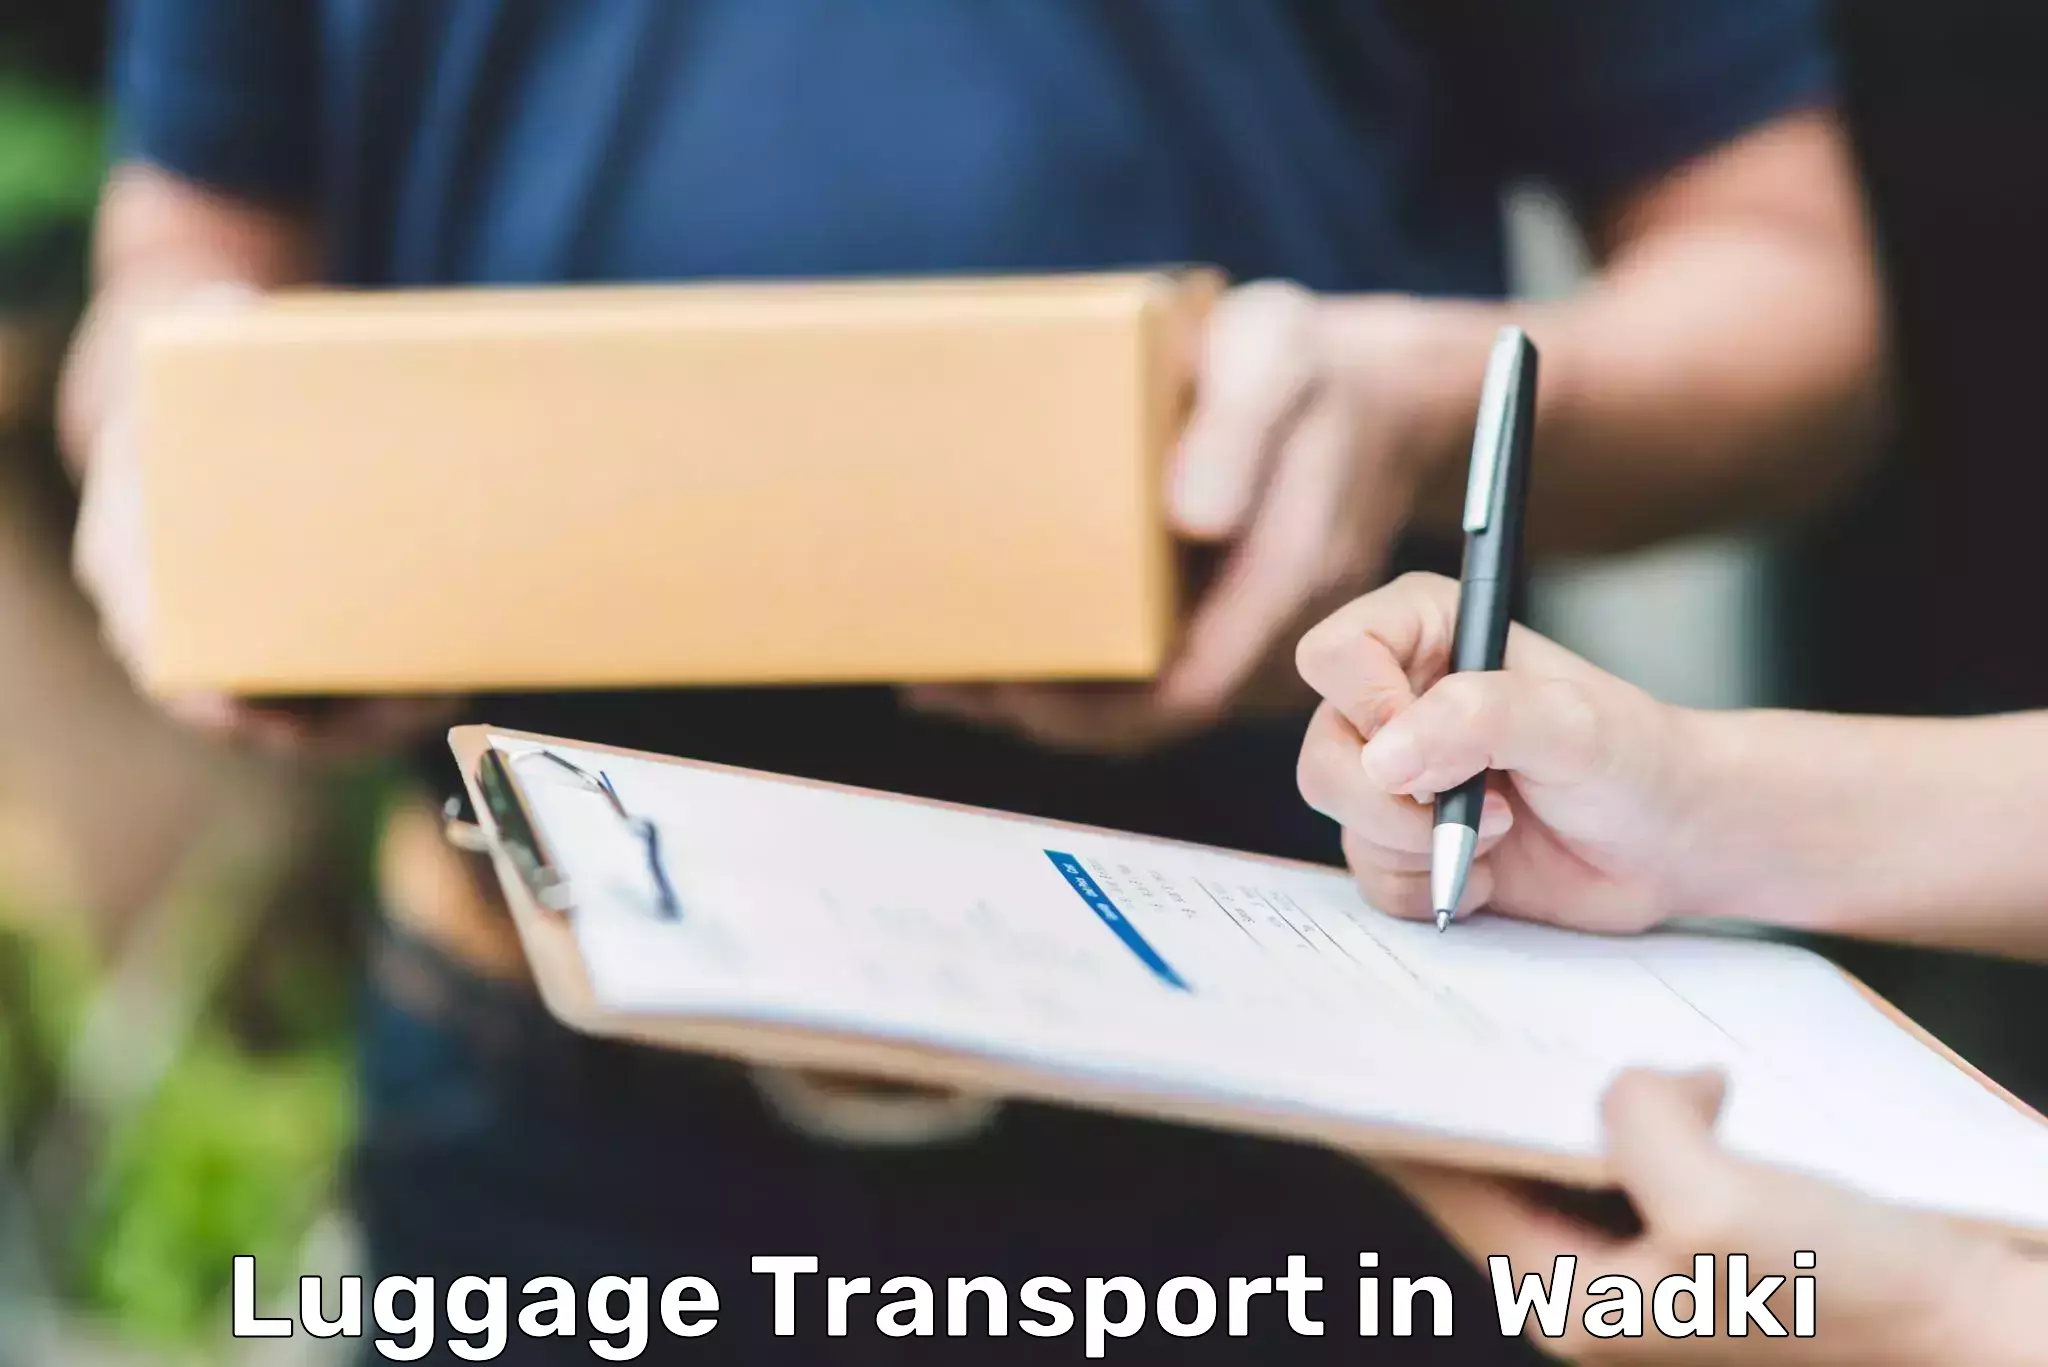 Quick luggage shipment in Wadki